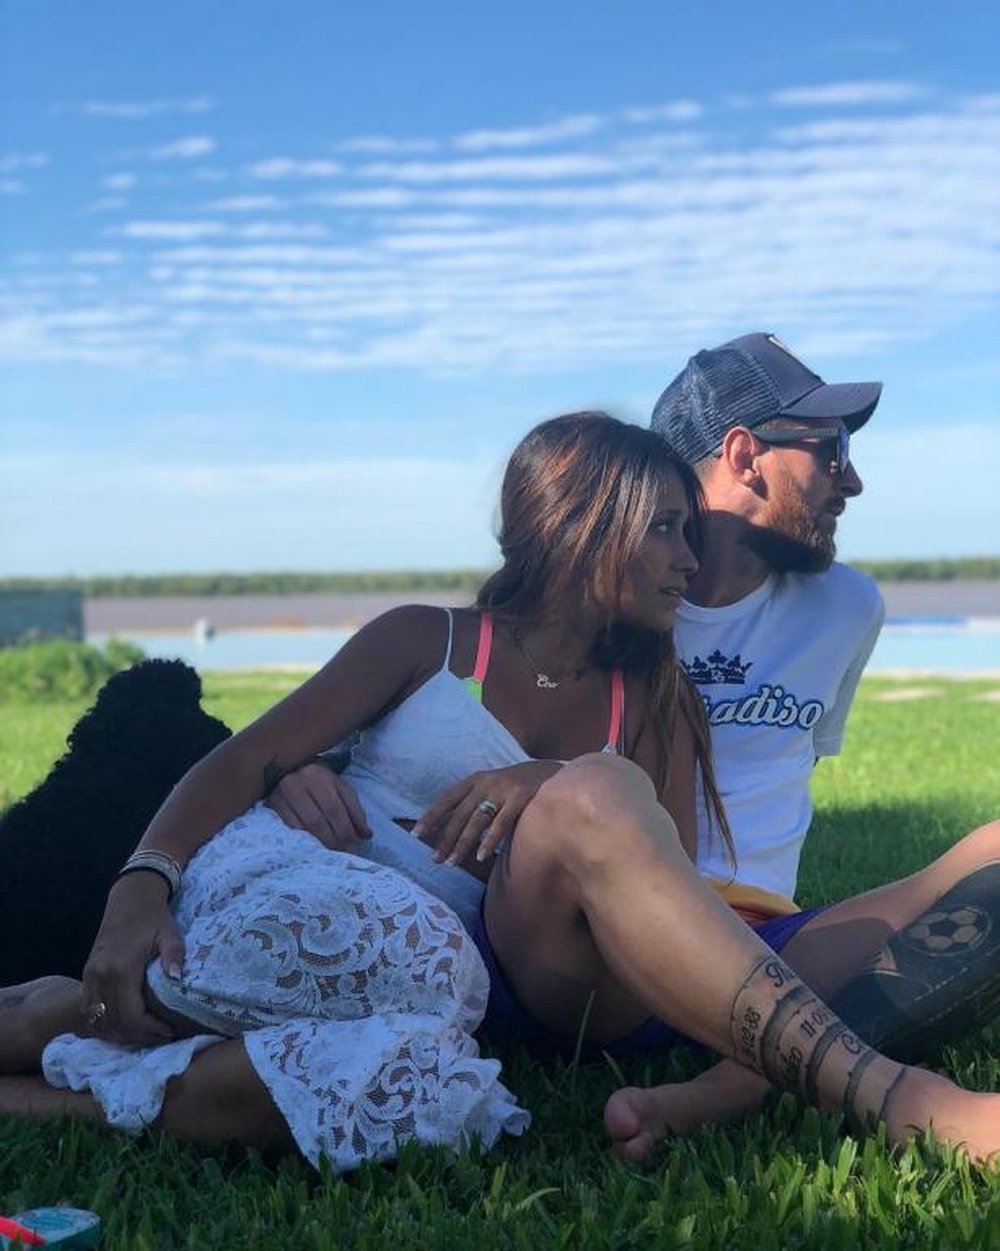 Messi continua aproveitando as suas férias. Instagram/LeoMessi